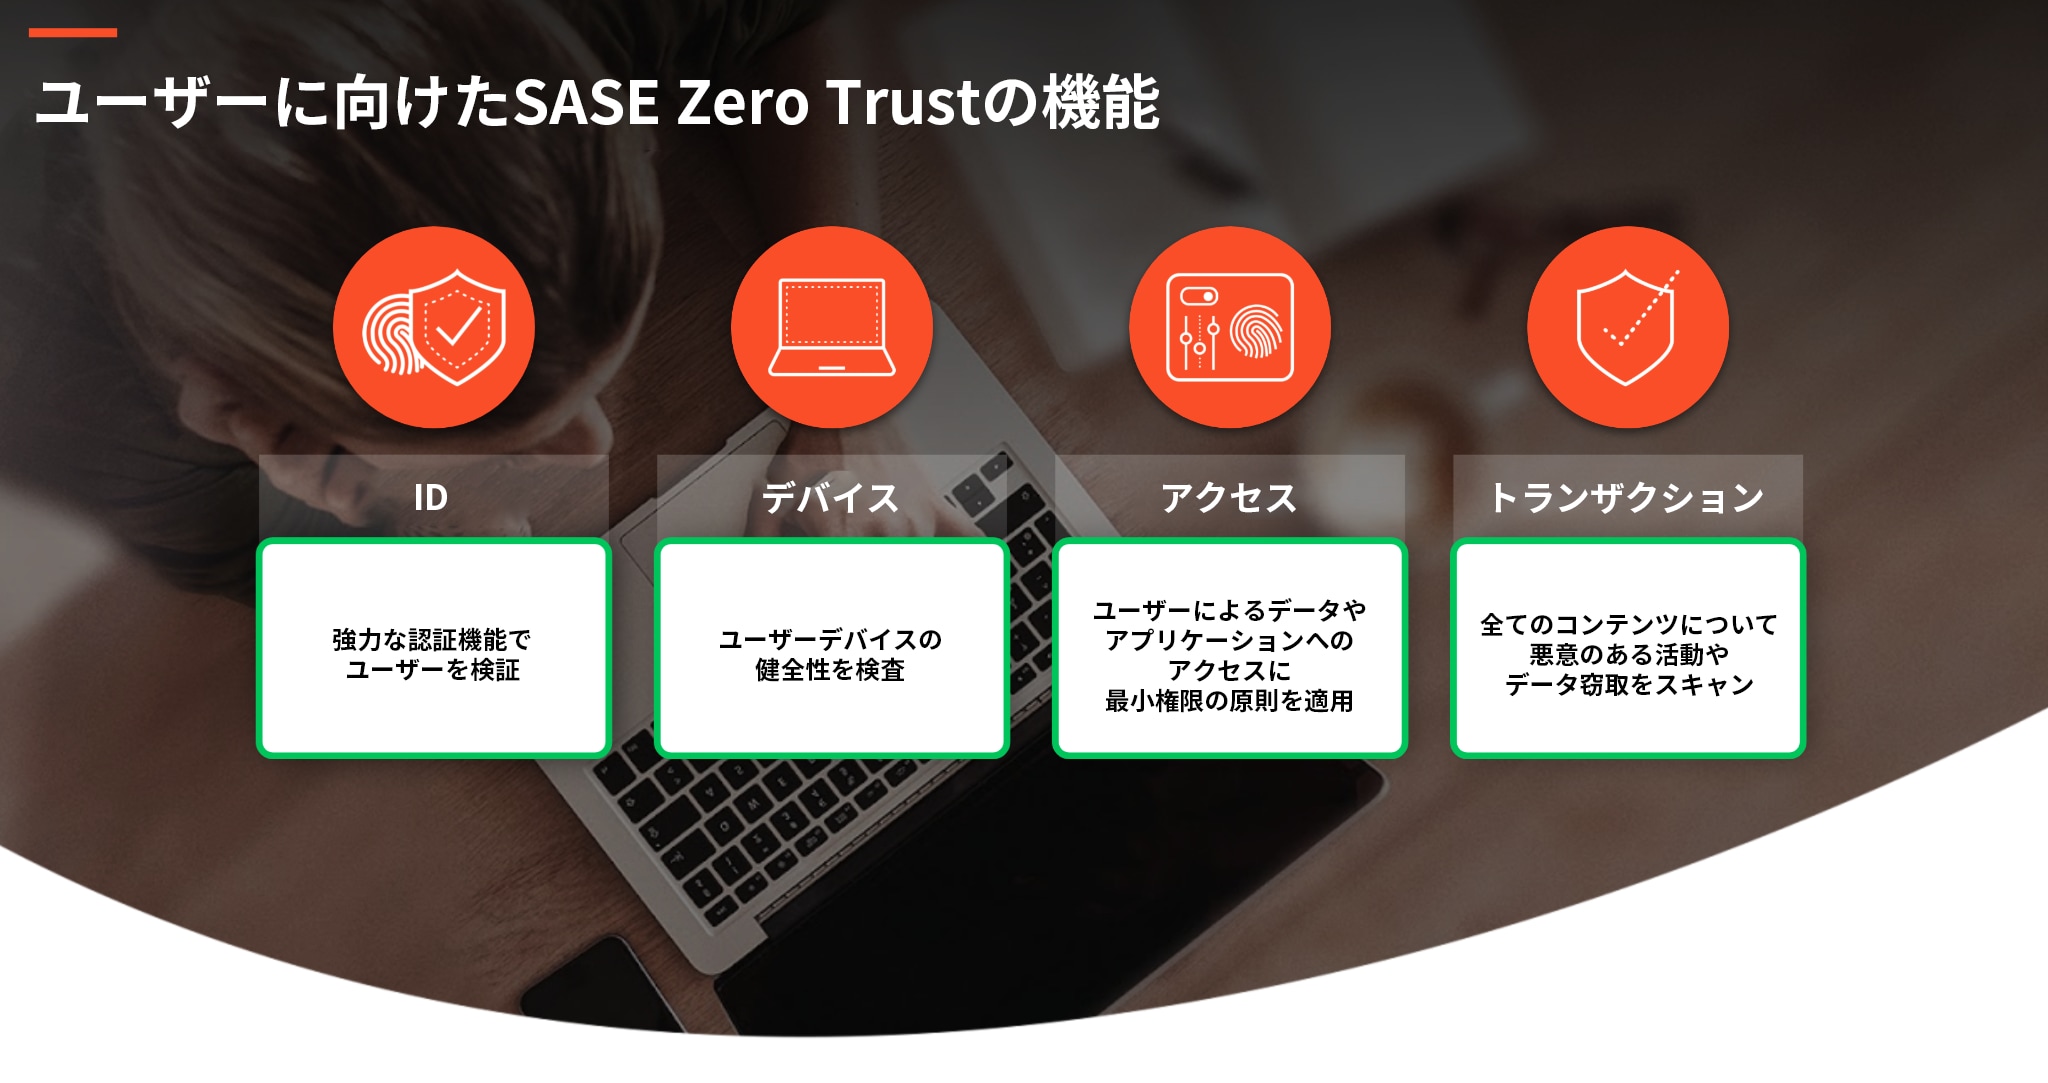 SASEのゼロトラスト機能では、ID、デバイス、アクセス、トランザクションをすべてカバーしている